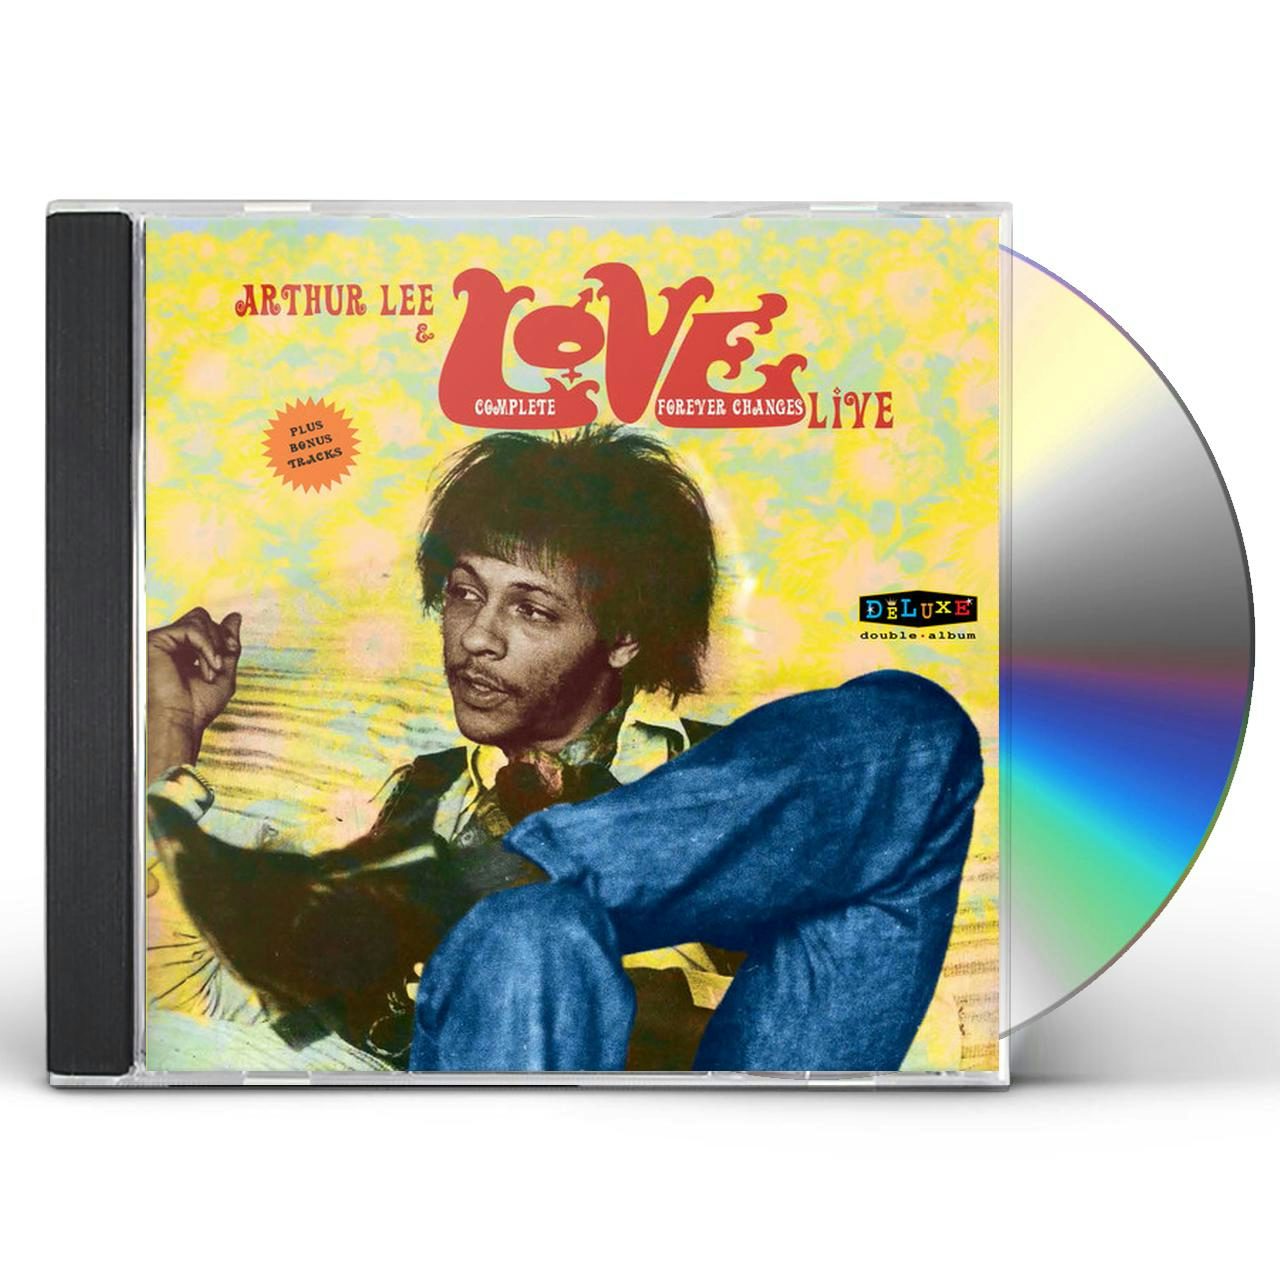 Arthur Lee - Complete Forever Changes Live [CD]